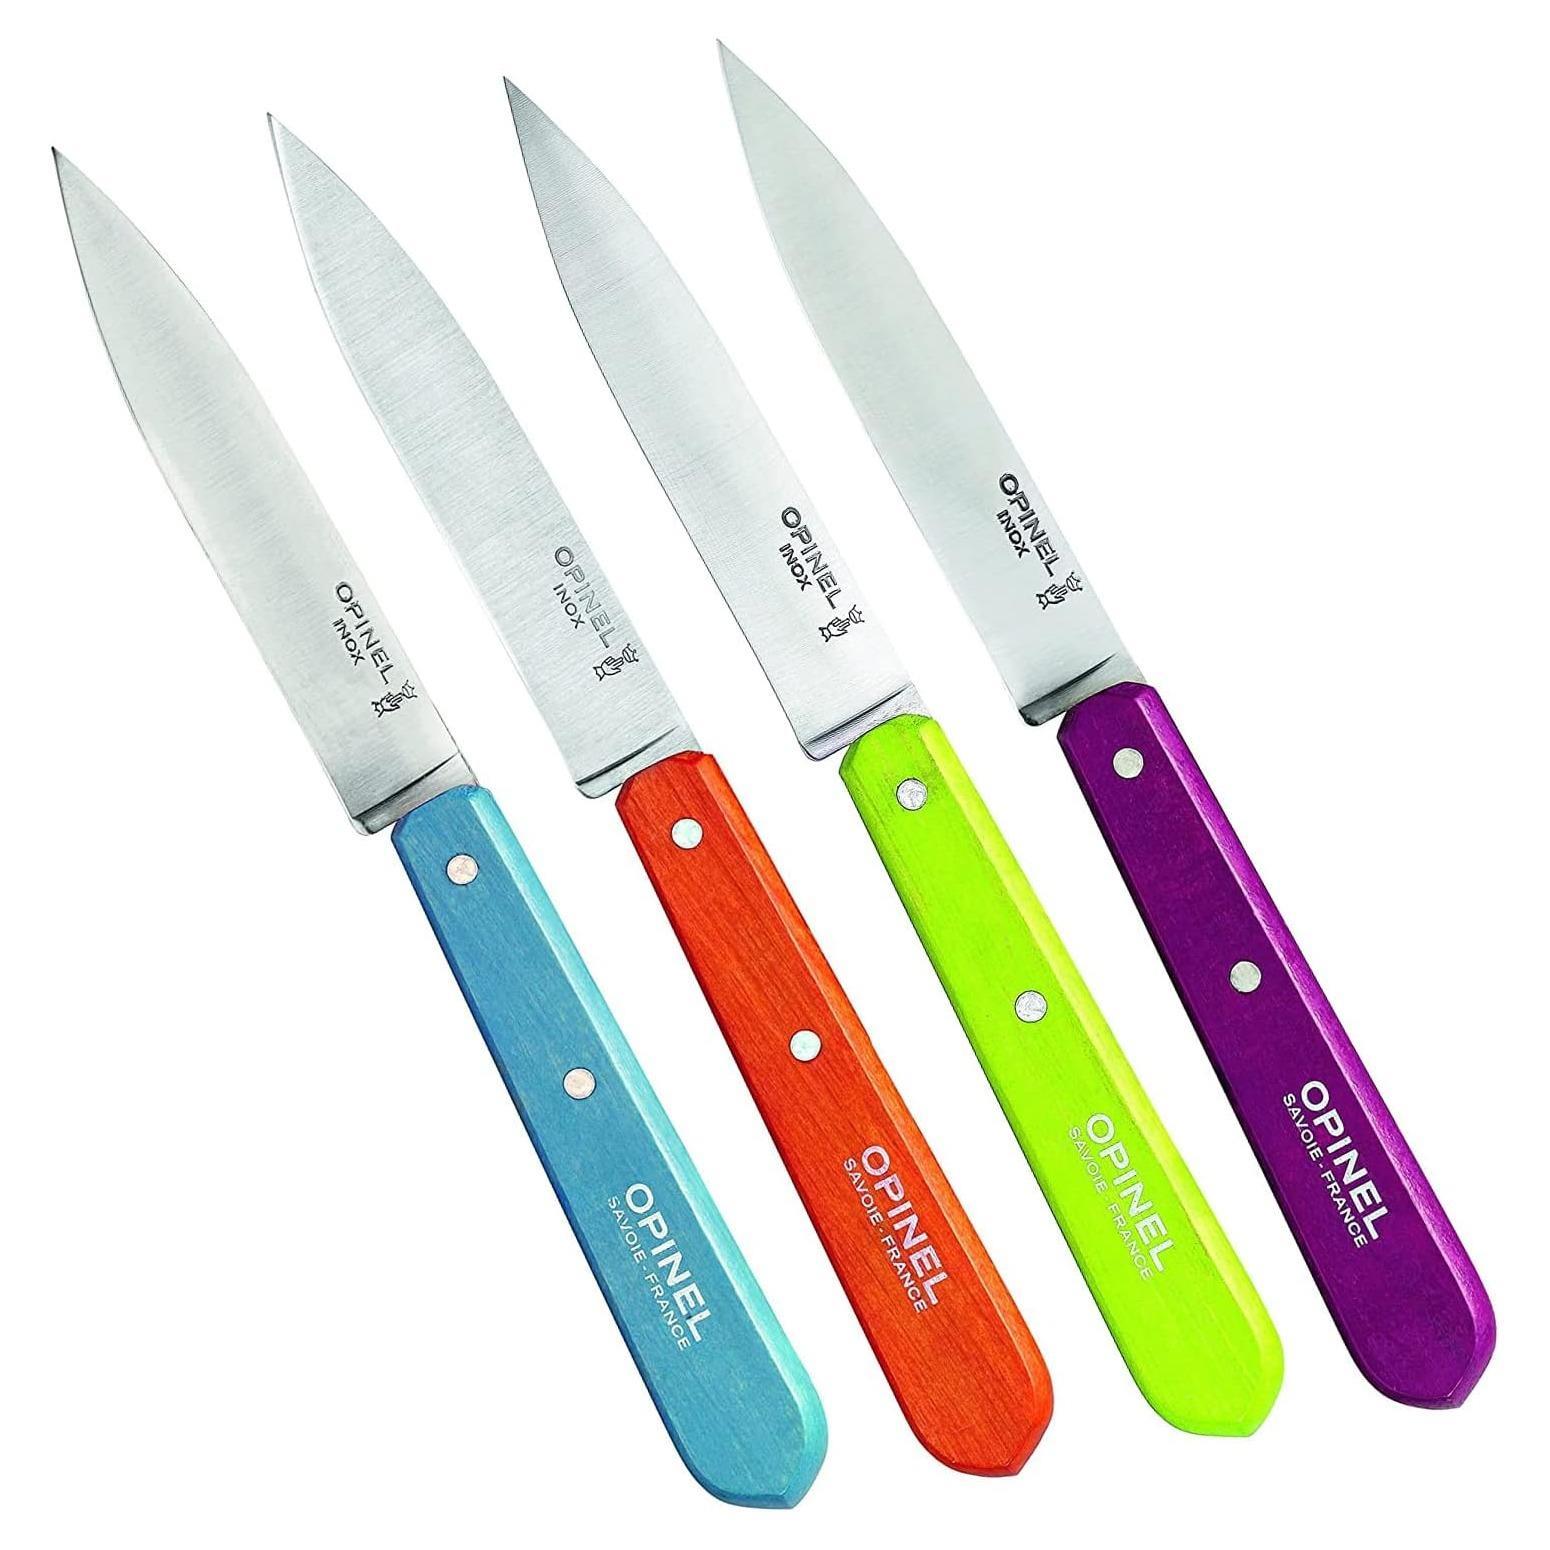 OPINEL 112 Paring knife - Essentials no 112 - kitchen knife 4 piece set